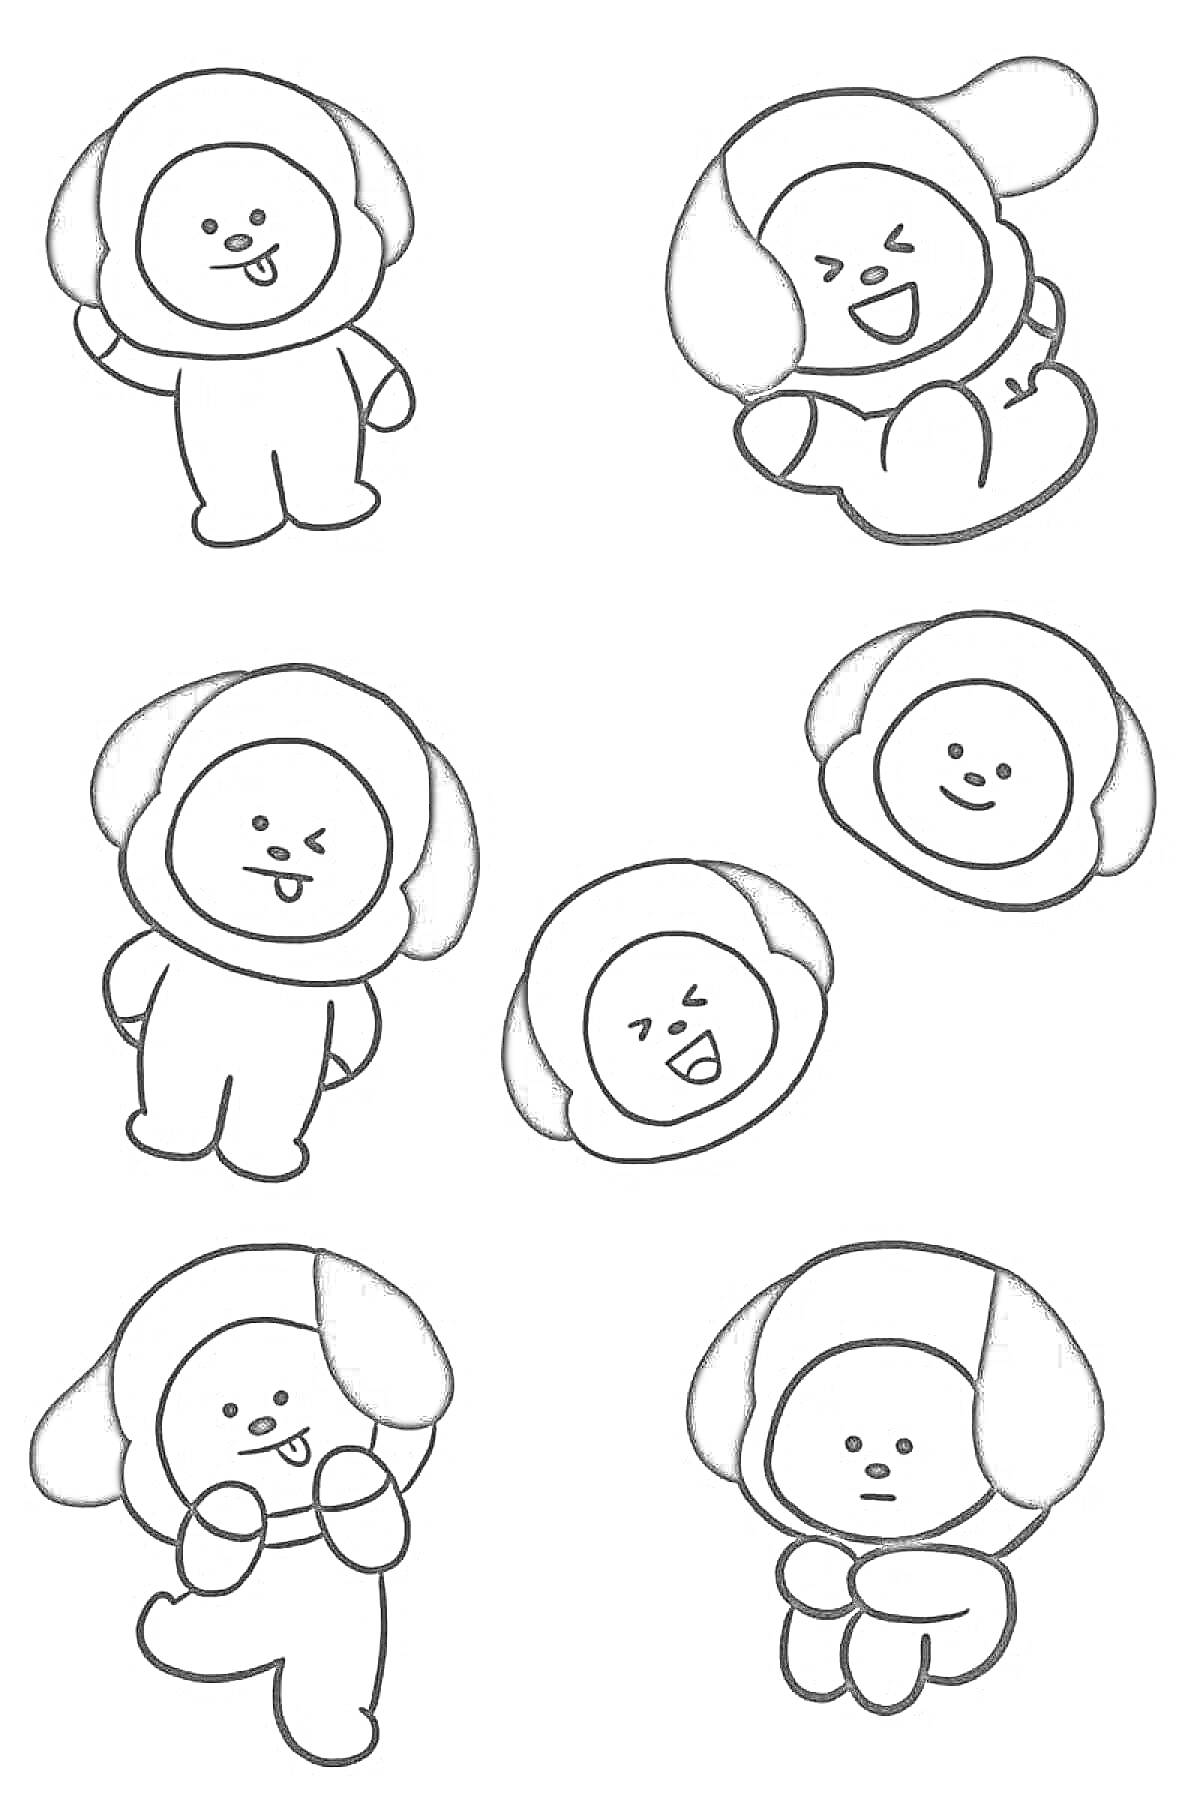 Раскраска Шесть персонажей с собачьими ушами в разных позах и выражениях лиц